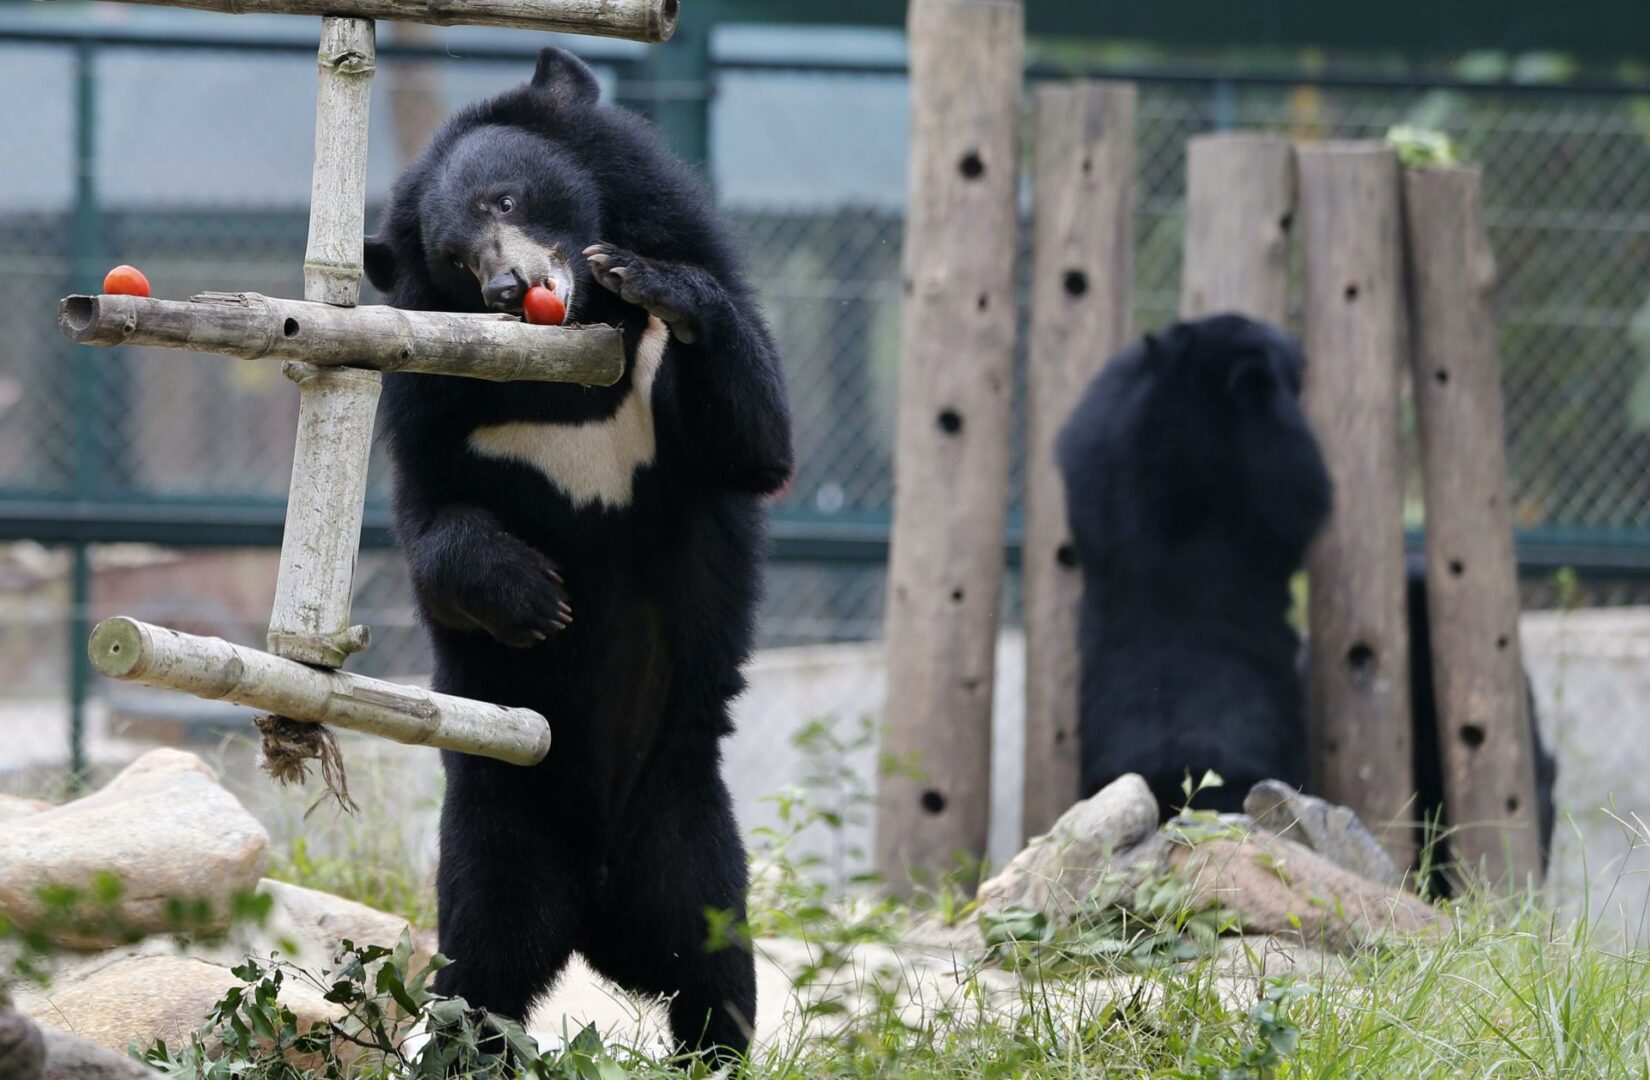 Un oso negro de un zoo de Florida se escapó, hirió a un cuidador y murió